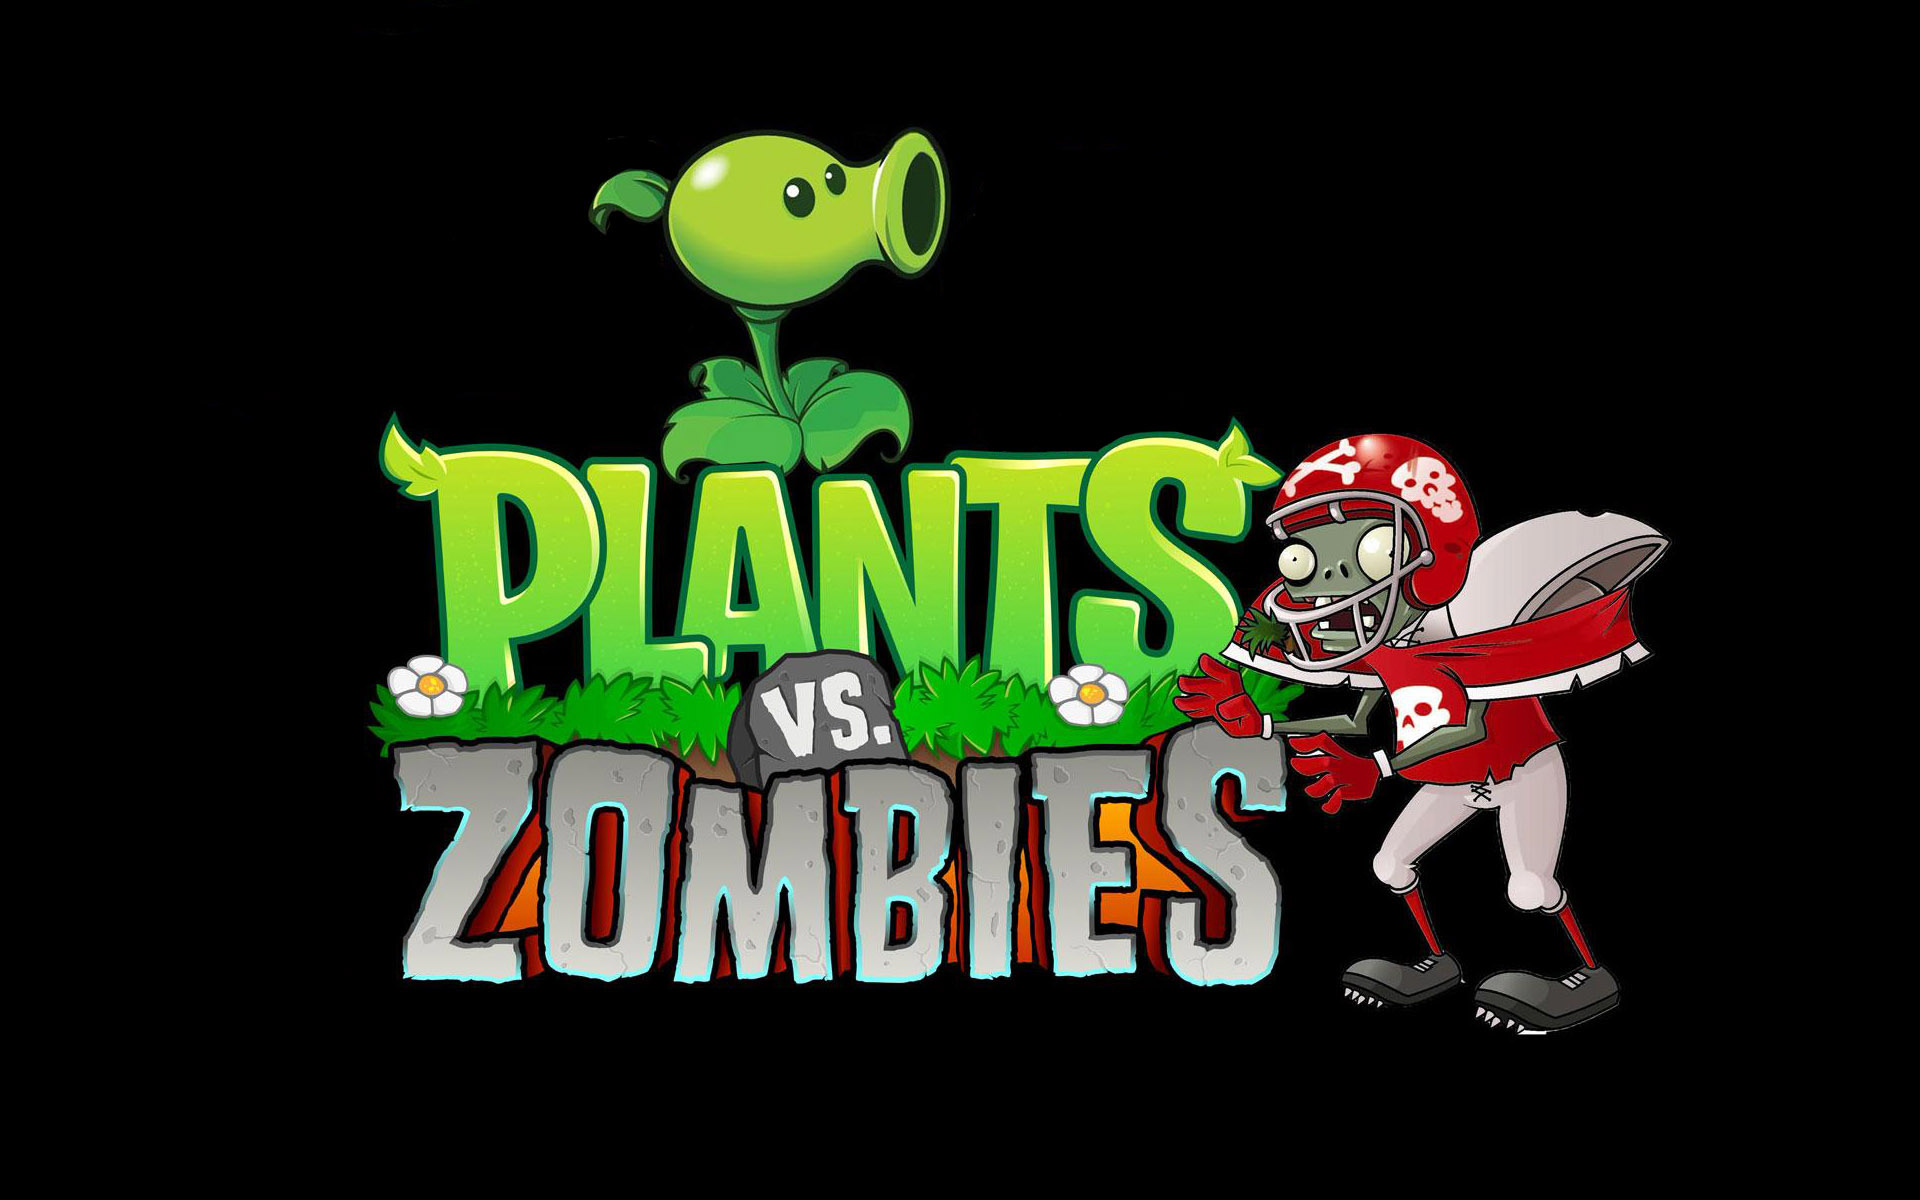 Зомби против 21. Plants vs. Zombies игры. Растения против зомби зомби. Зомби против растений GOTY Edition. Plants vs Zombies зомби.